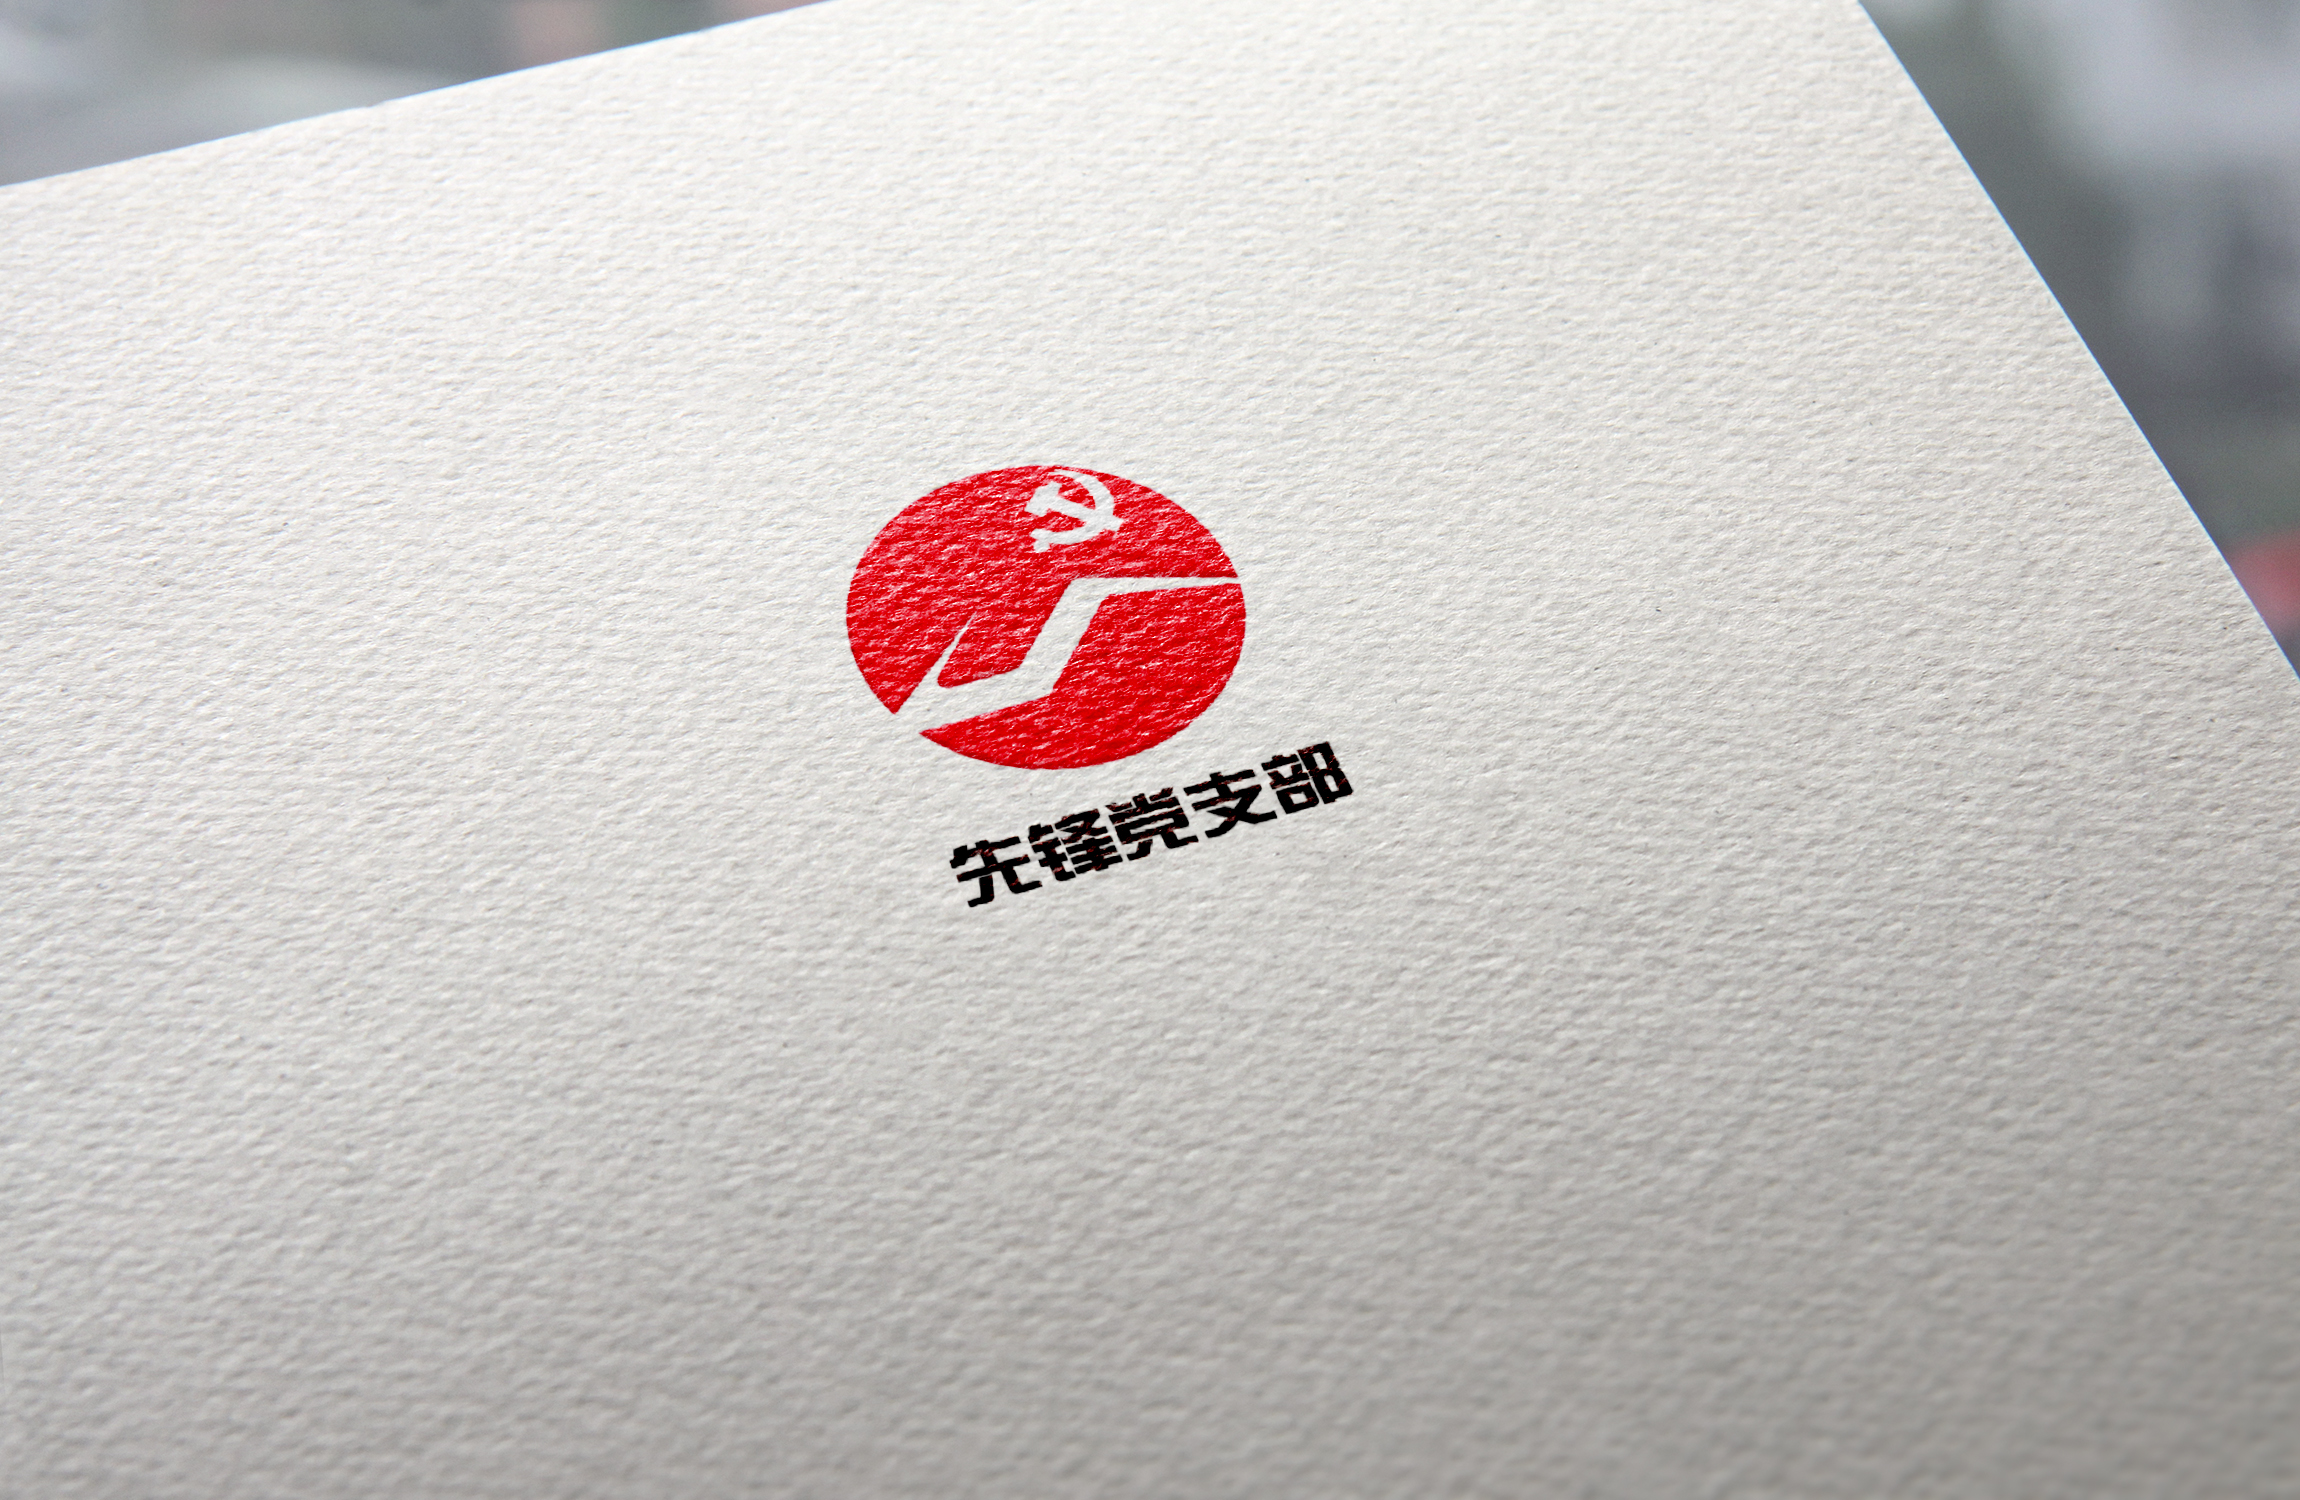 先锋党支部 logo